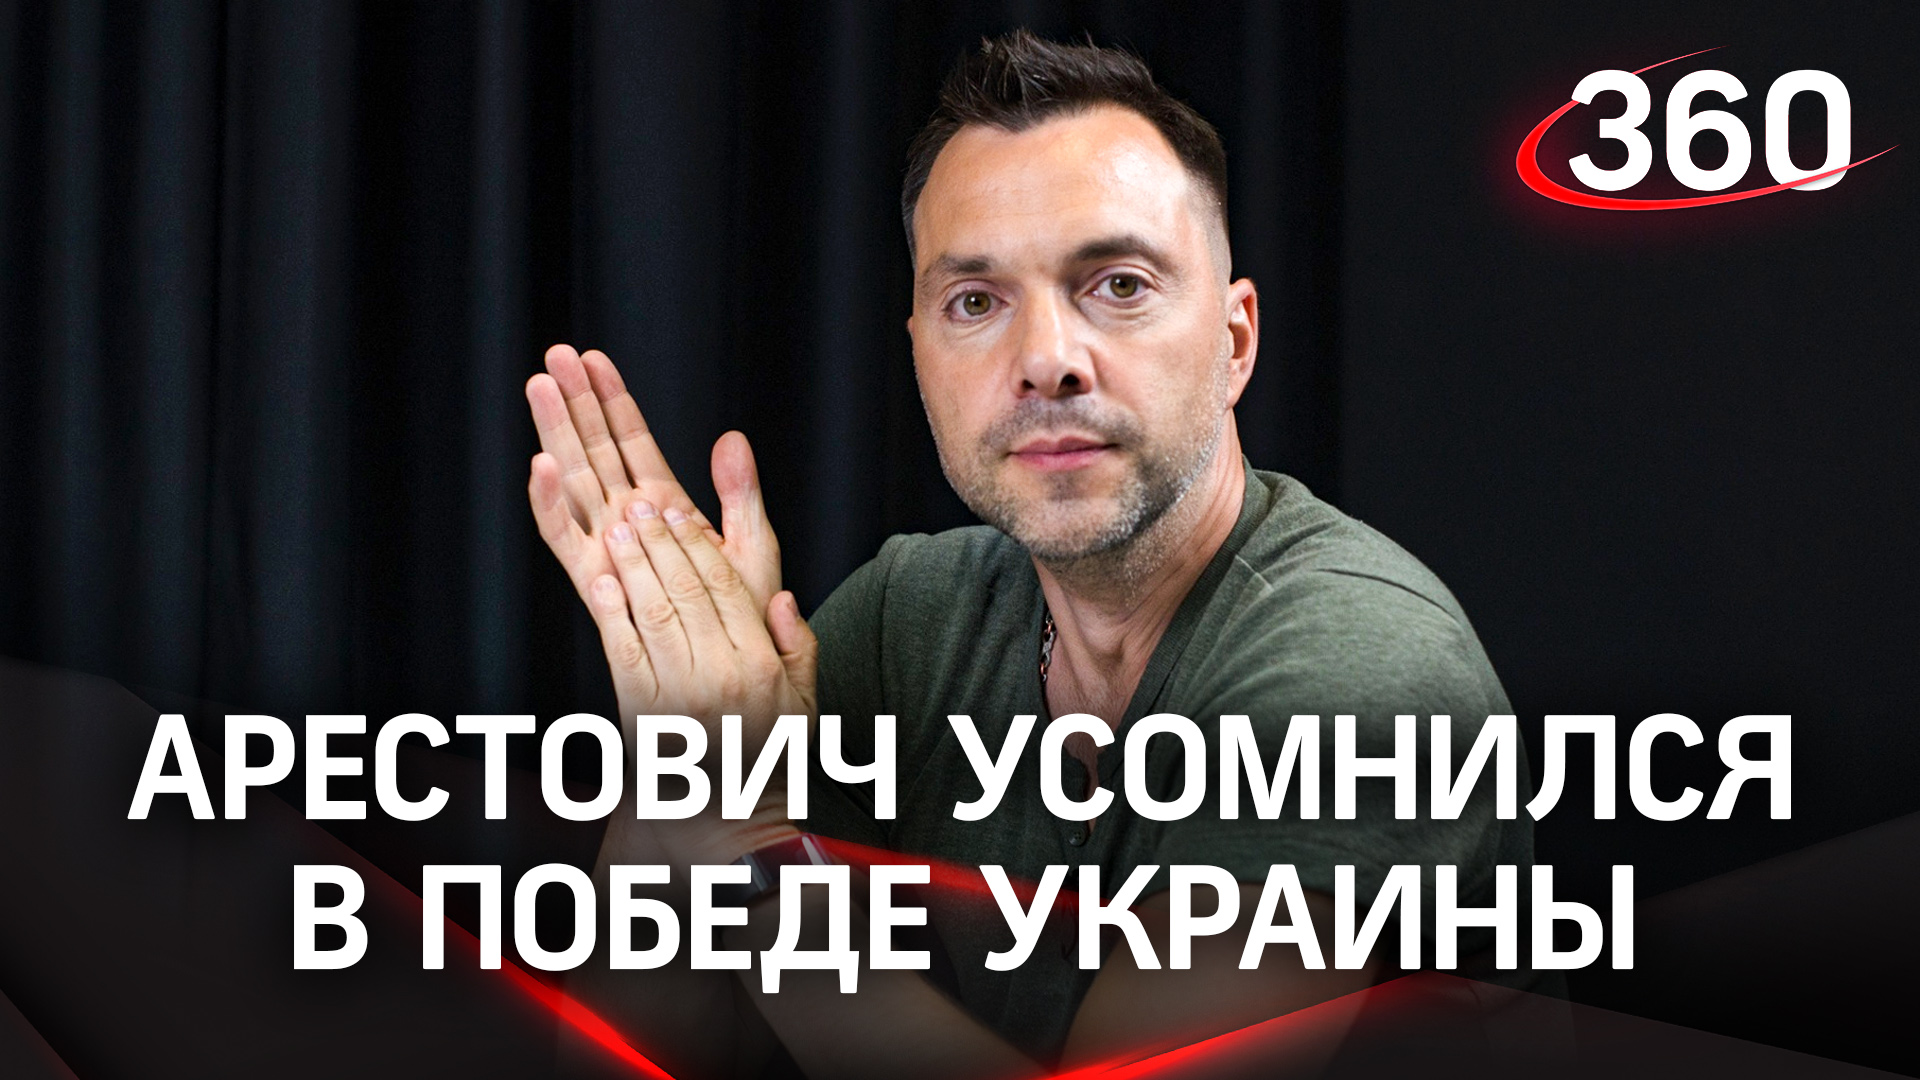 Алексей Арестович усомнился в победе Украины в СВО